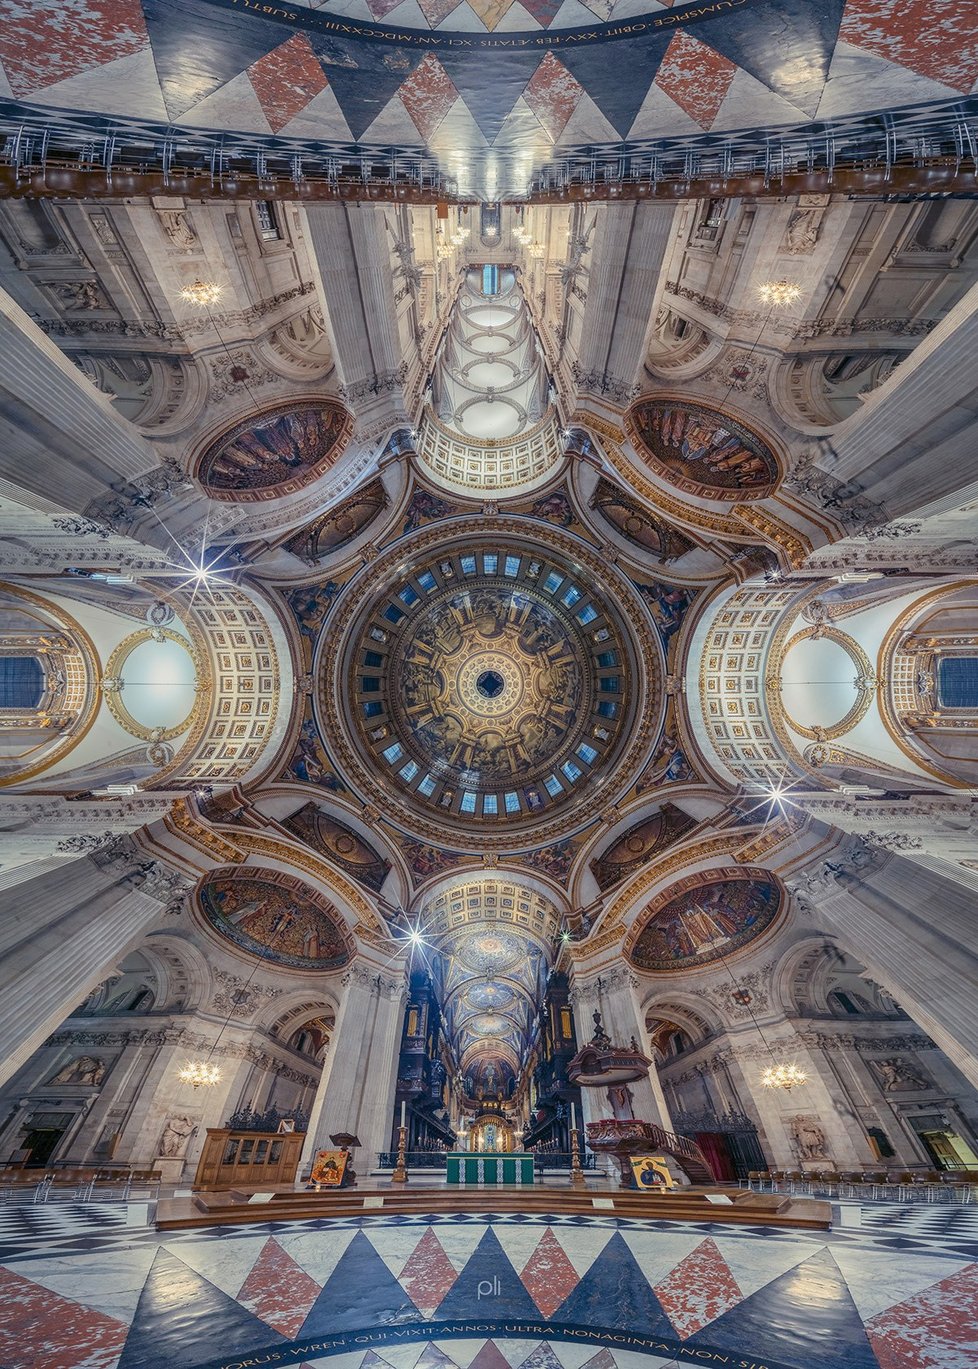 Panoramatické snímky chrámů od Petera Liho vás okouzlí